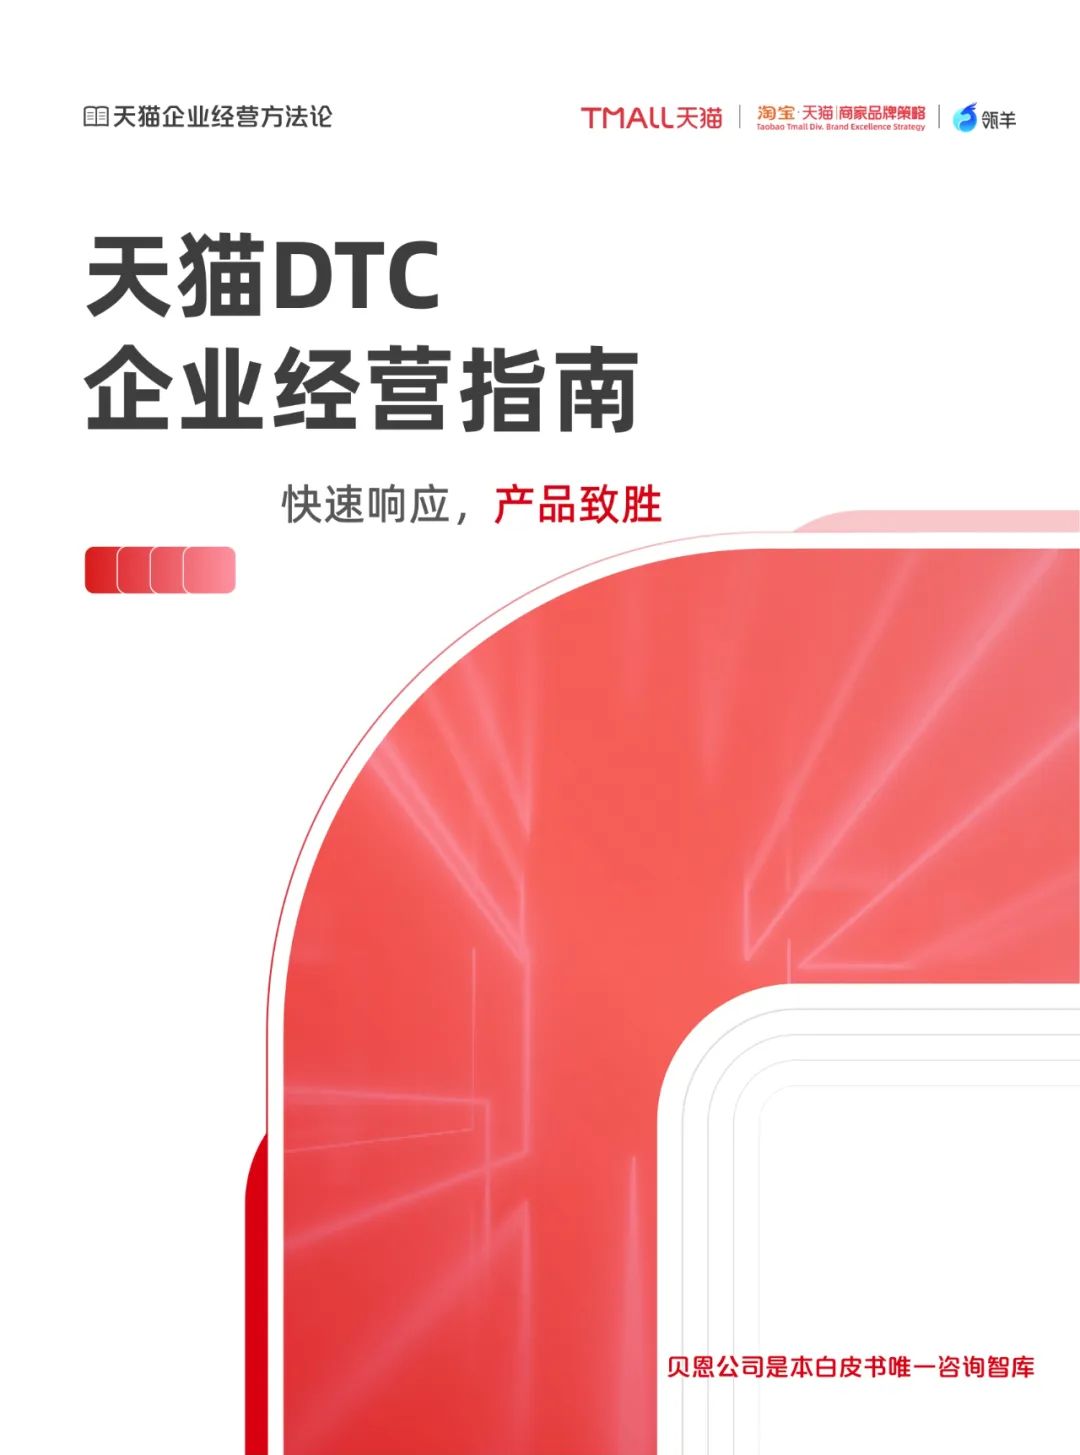 天猫DTC企业经营指南35页PPT转图 —— 快速响应，产品致胜